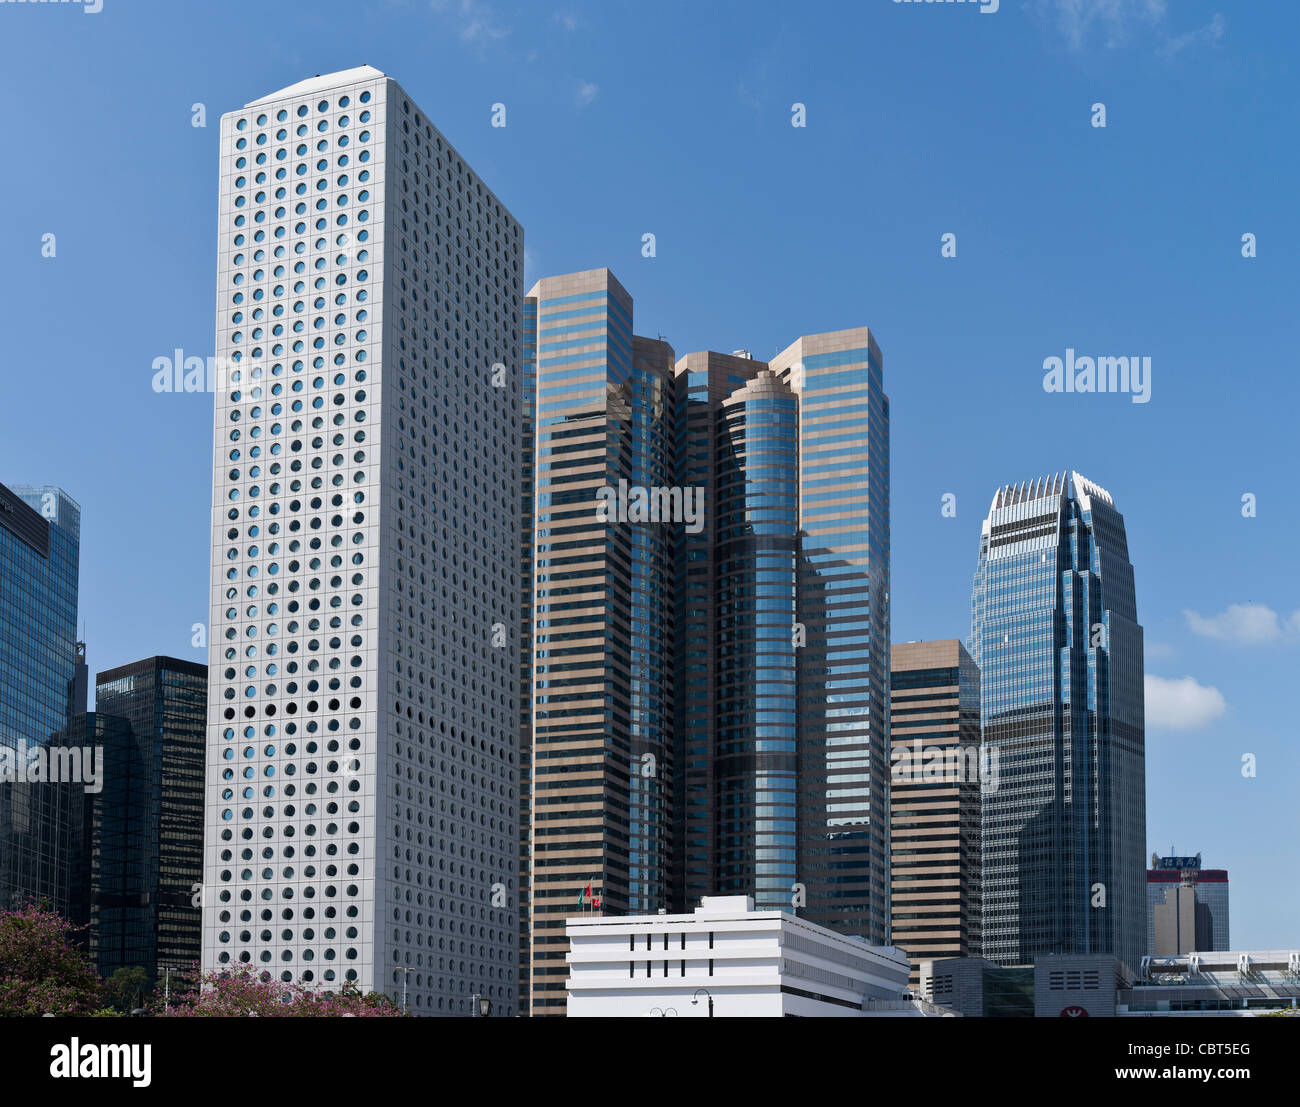 dh CENTRAL HONG KONG Central Hong Kong gratte-ciel gratte-ciel gratte-ciel gratte-ciel gratte-ciel de la ville place d'échange de la Maison Jardine IFC 1 tour de gratte-ciel d'affaires de la ville Banque D'Images